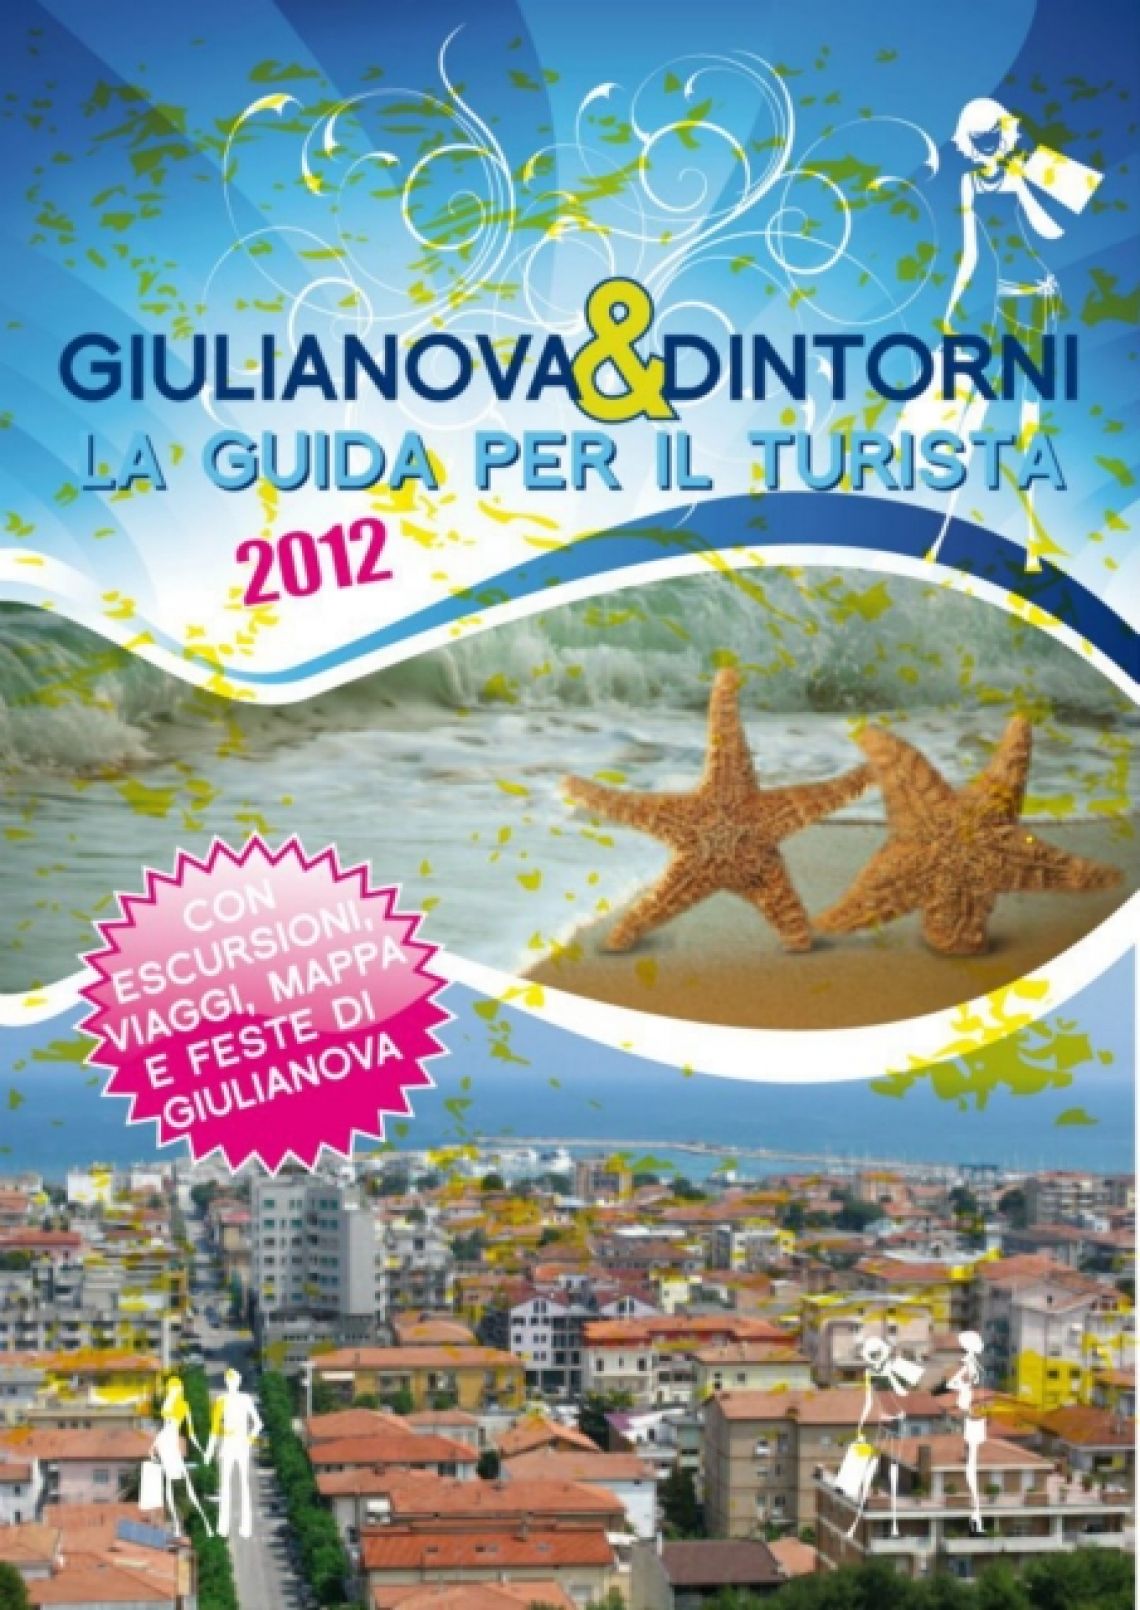 Giulianova e dintorni - La guida per il turista